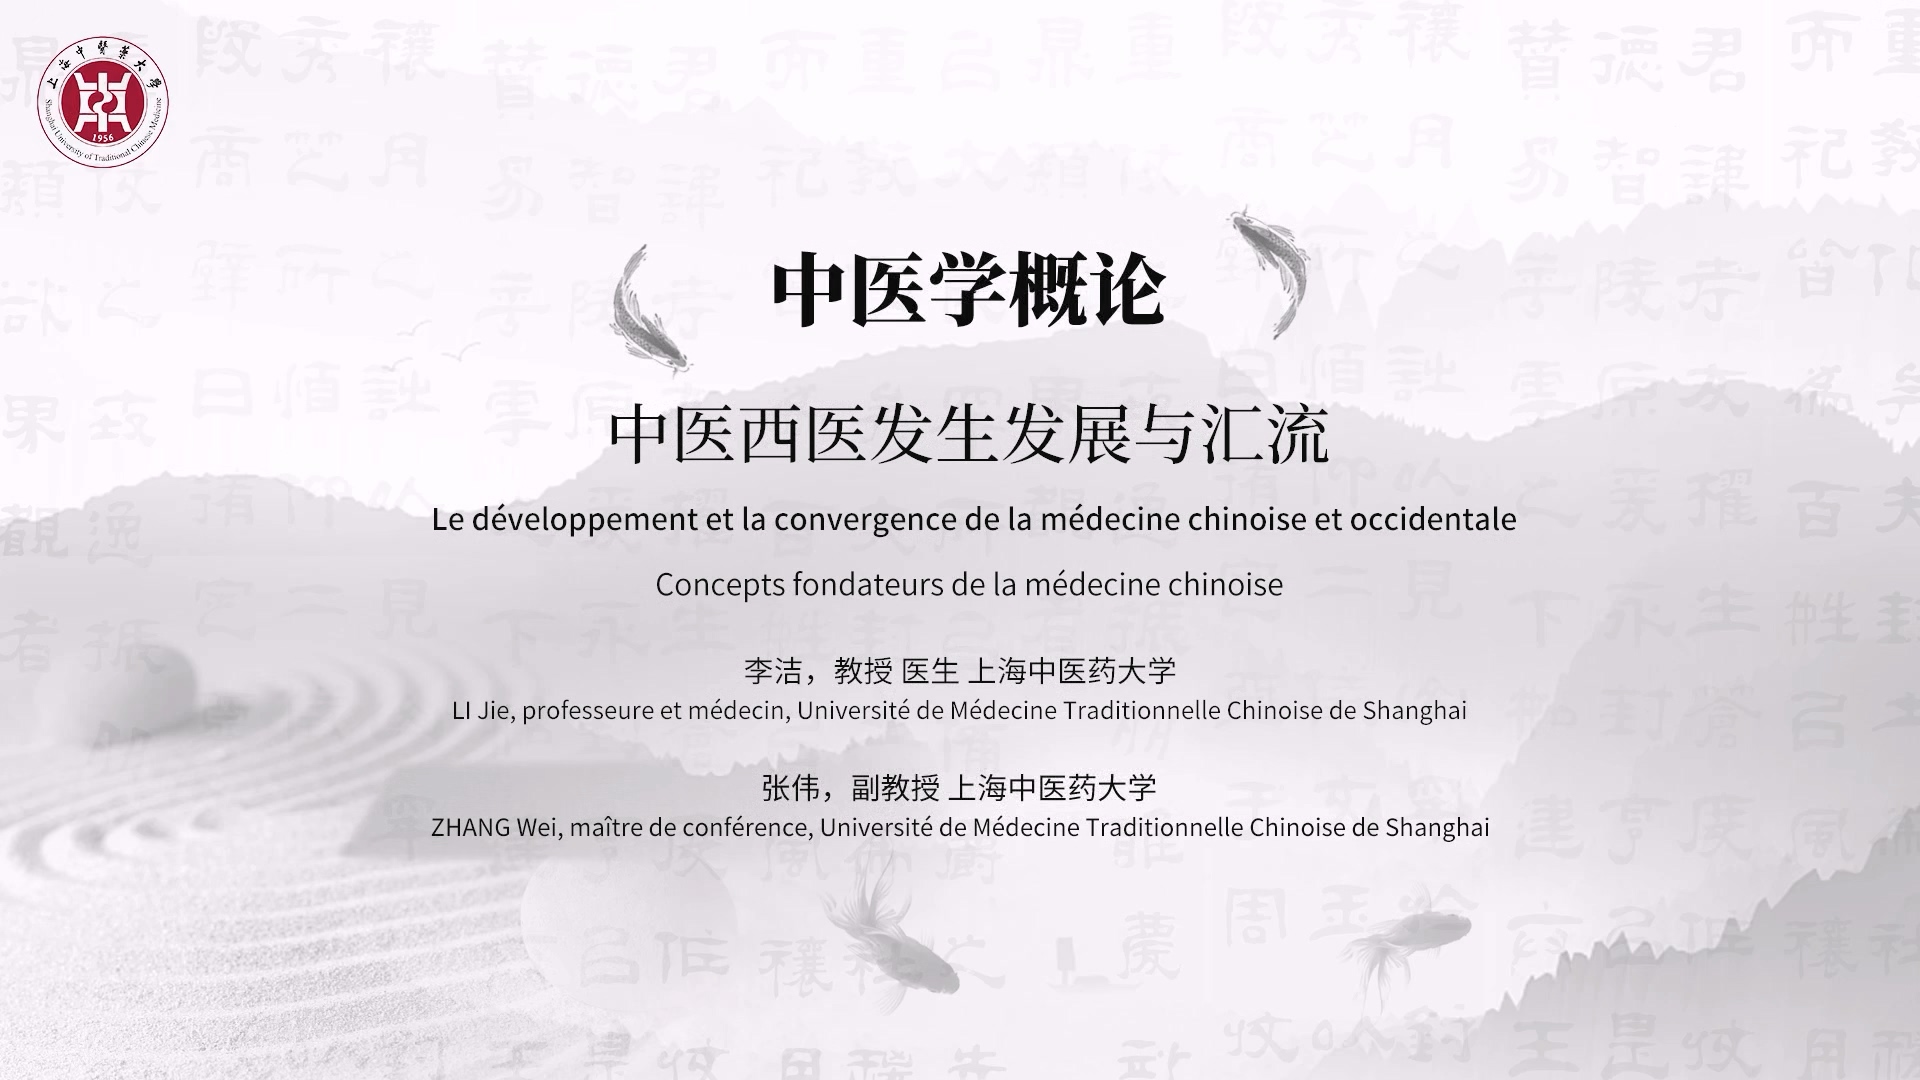 1.3 Le développement et la convergence de la médecine chinoise et occidentale